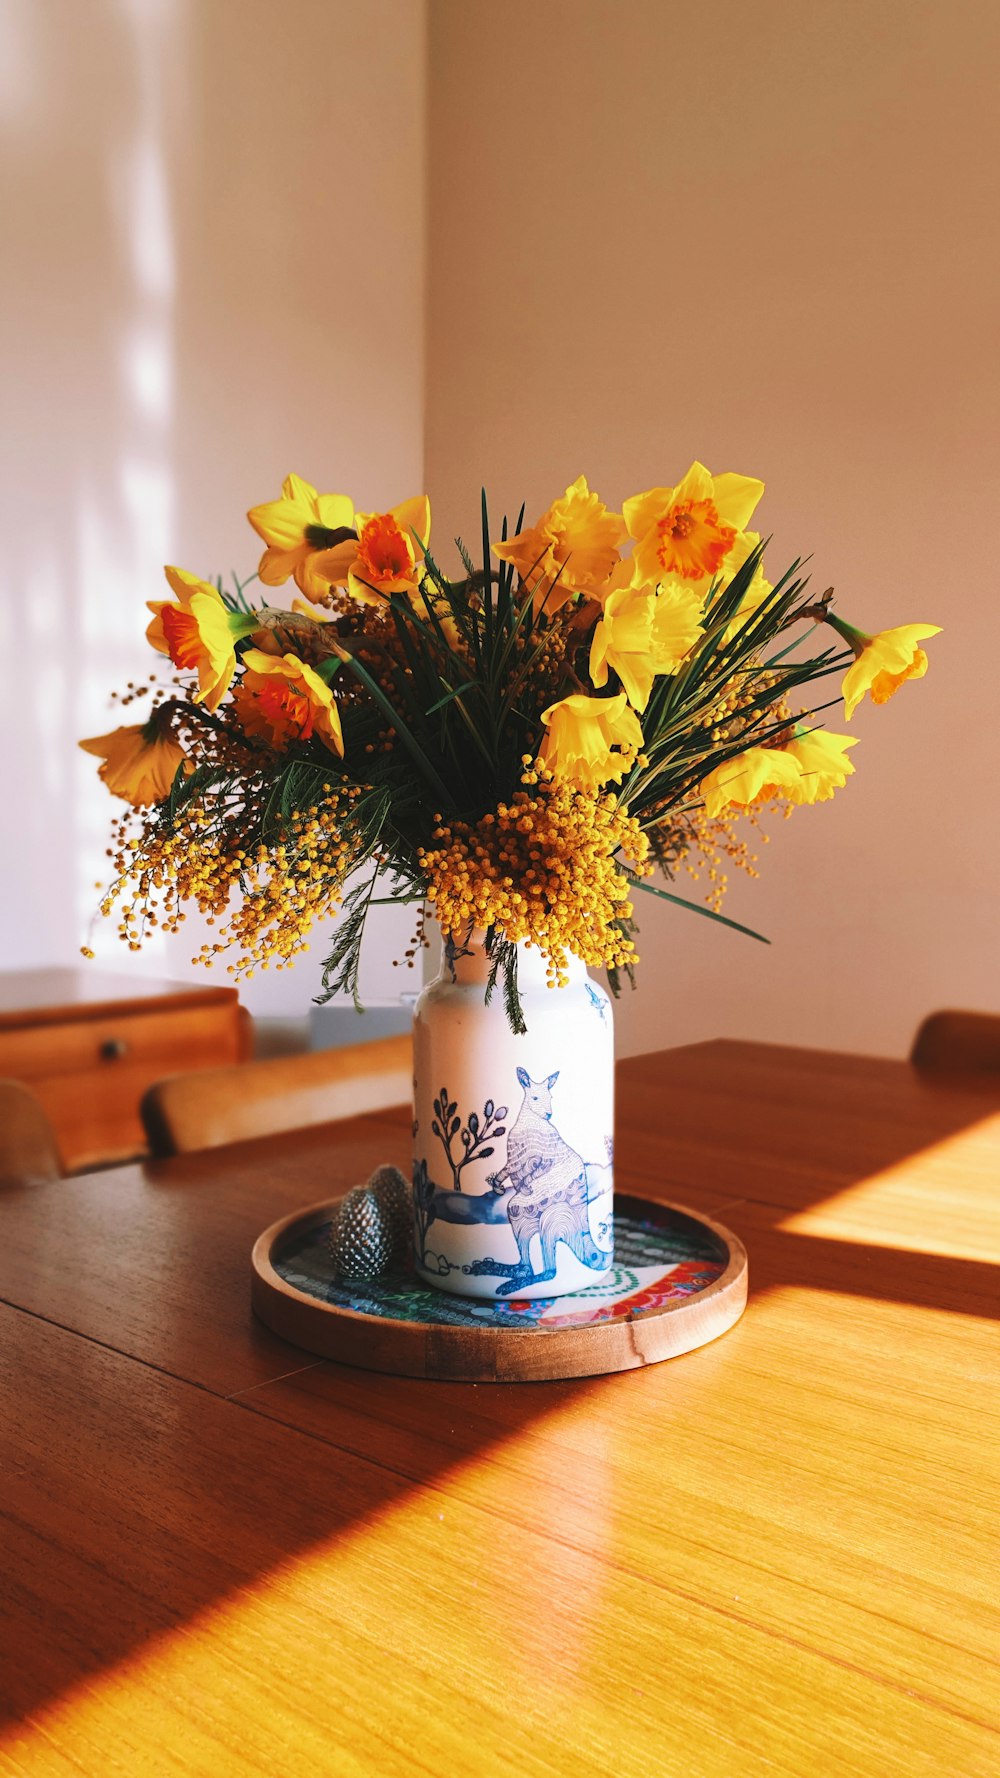 花瓶に飾られた黄色い花びらの花